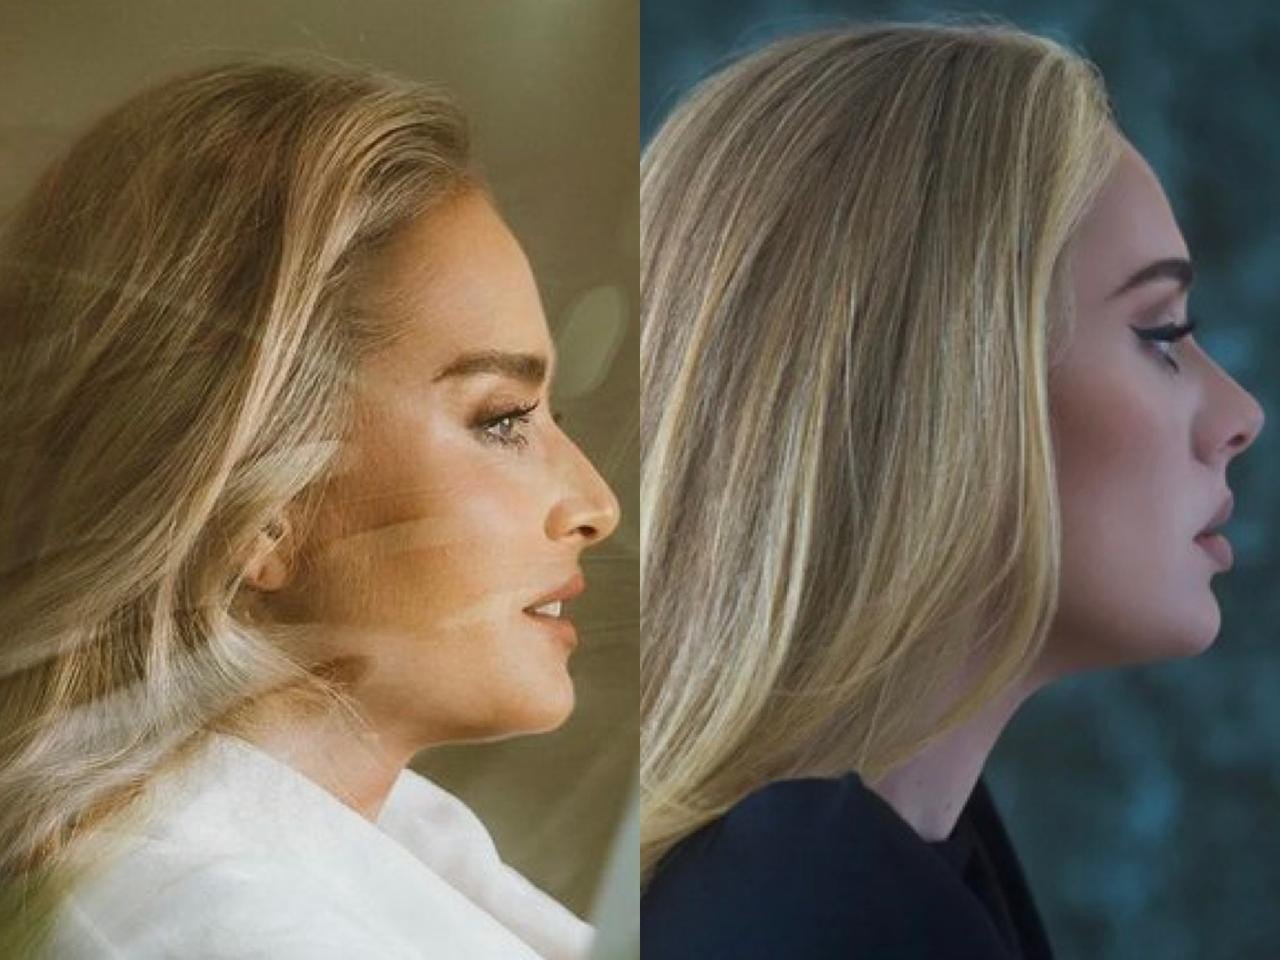 Angélica é comparada a Adele em foto glamourosa